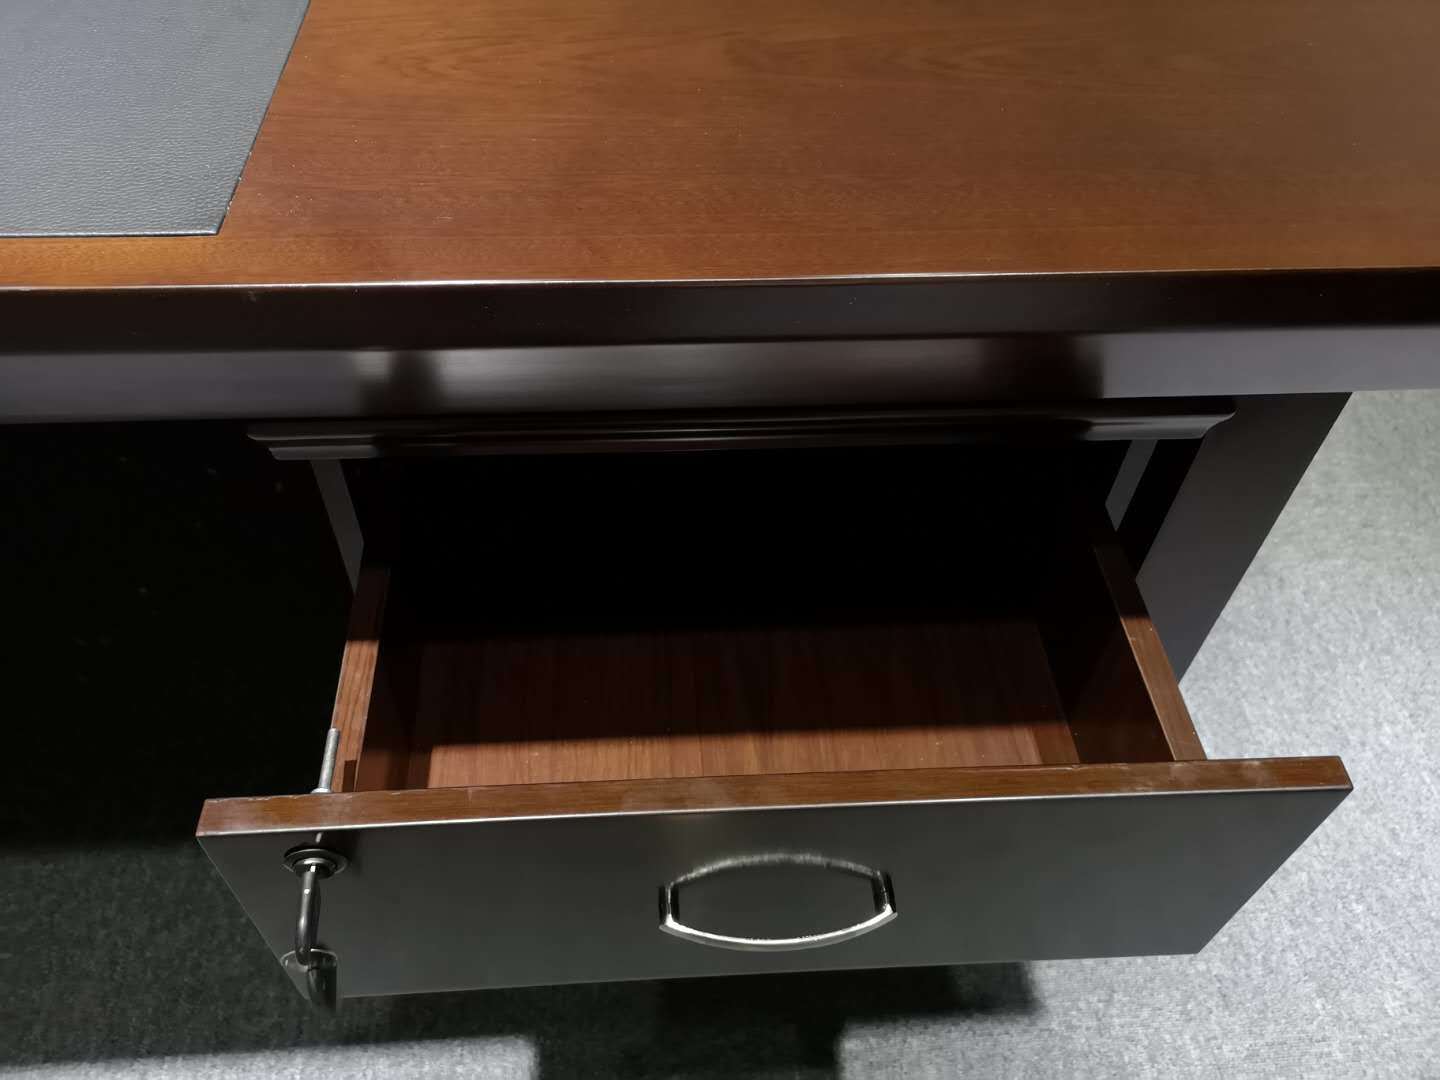 Modern antique wooden office furniture luxury office furniture desk paint office desk